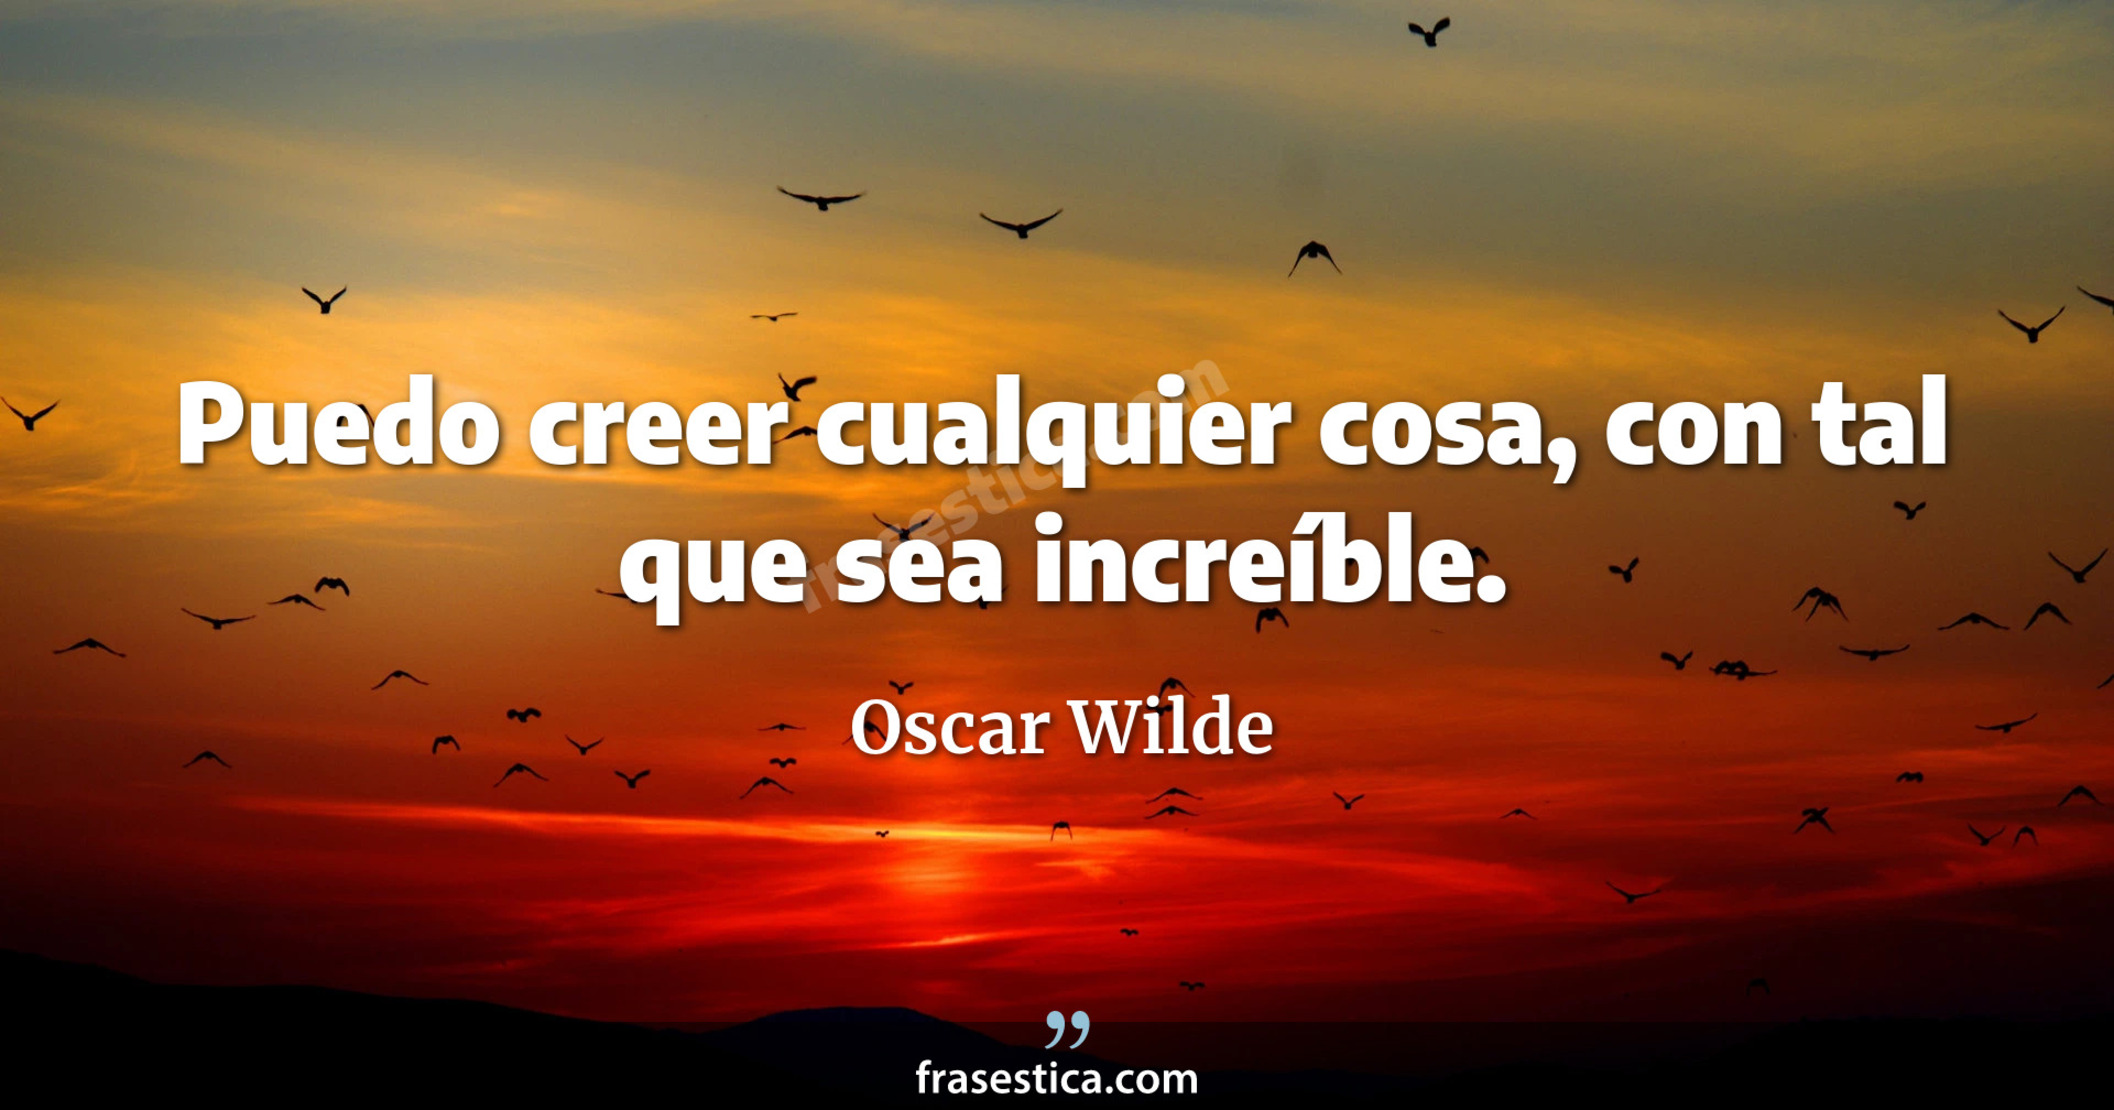 Puedo creer cualquier cosa, con tal que sea increíble. - Oscar Wilde